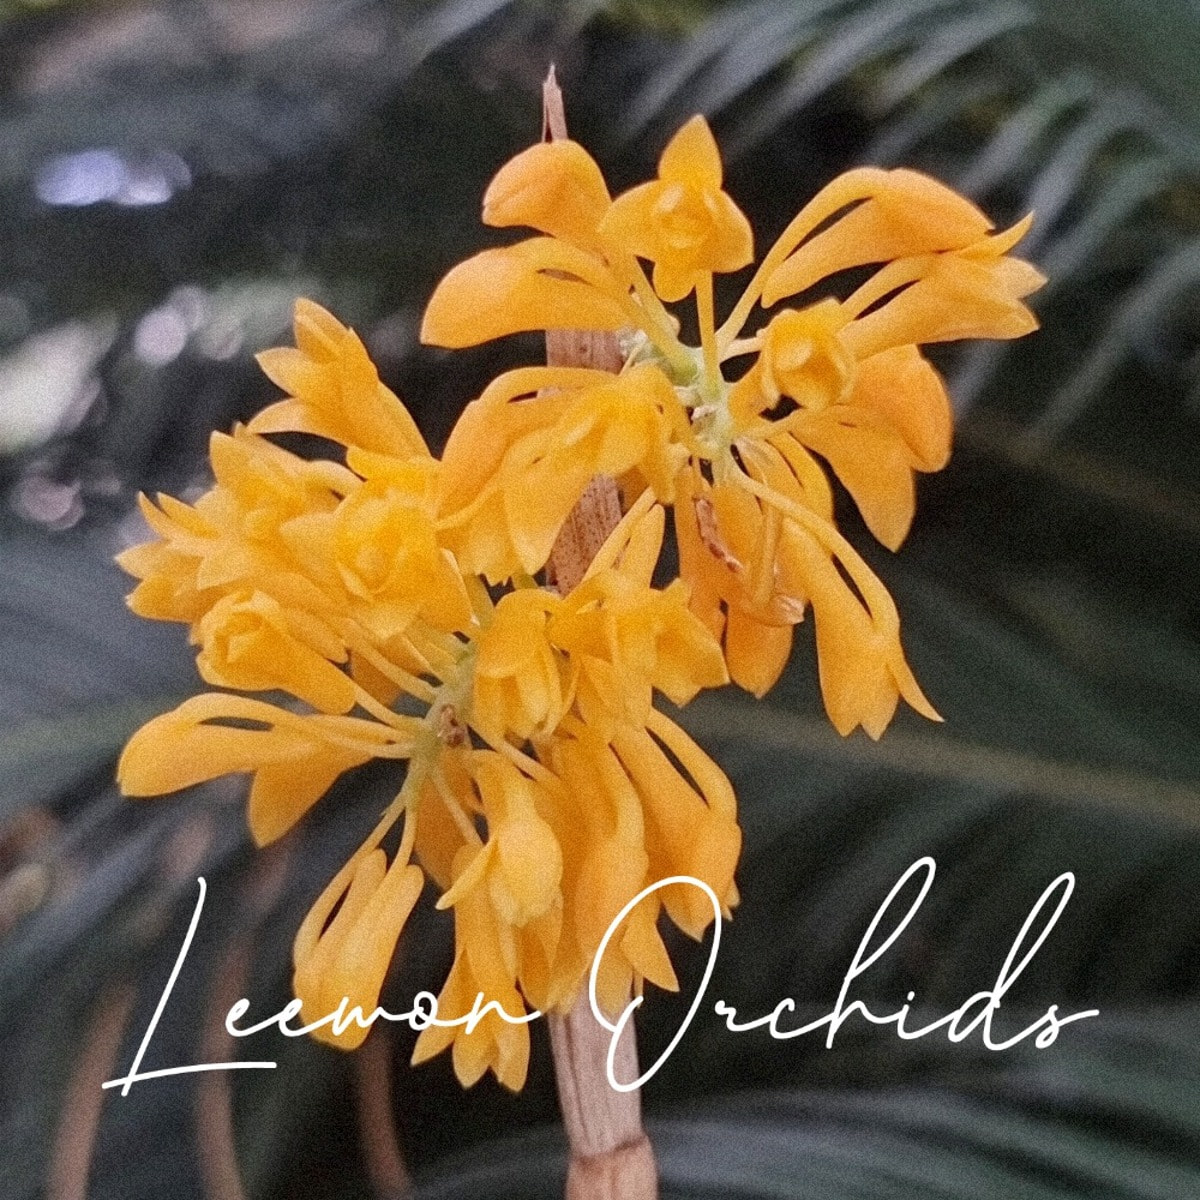 덴드로비움 티온기아이 Dendrobium tiongii (온라인 한정재고: 1)